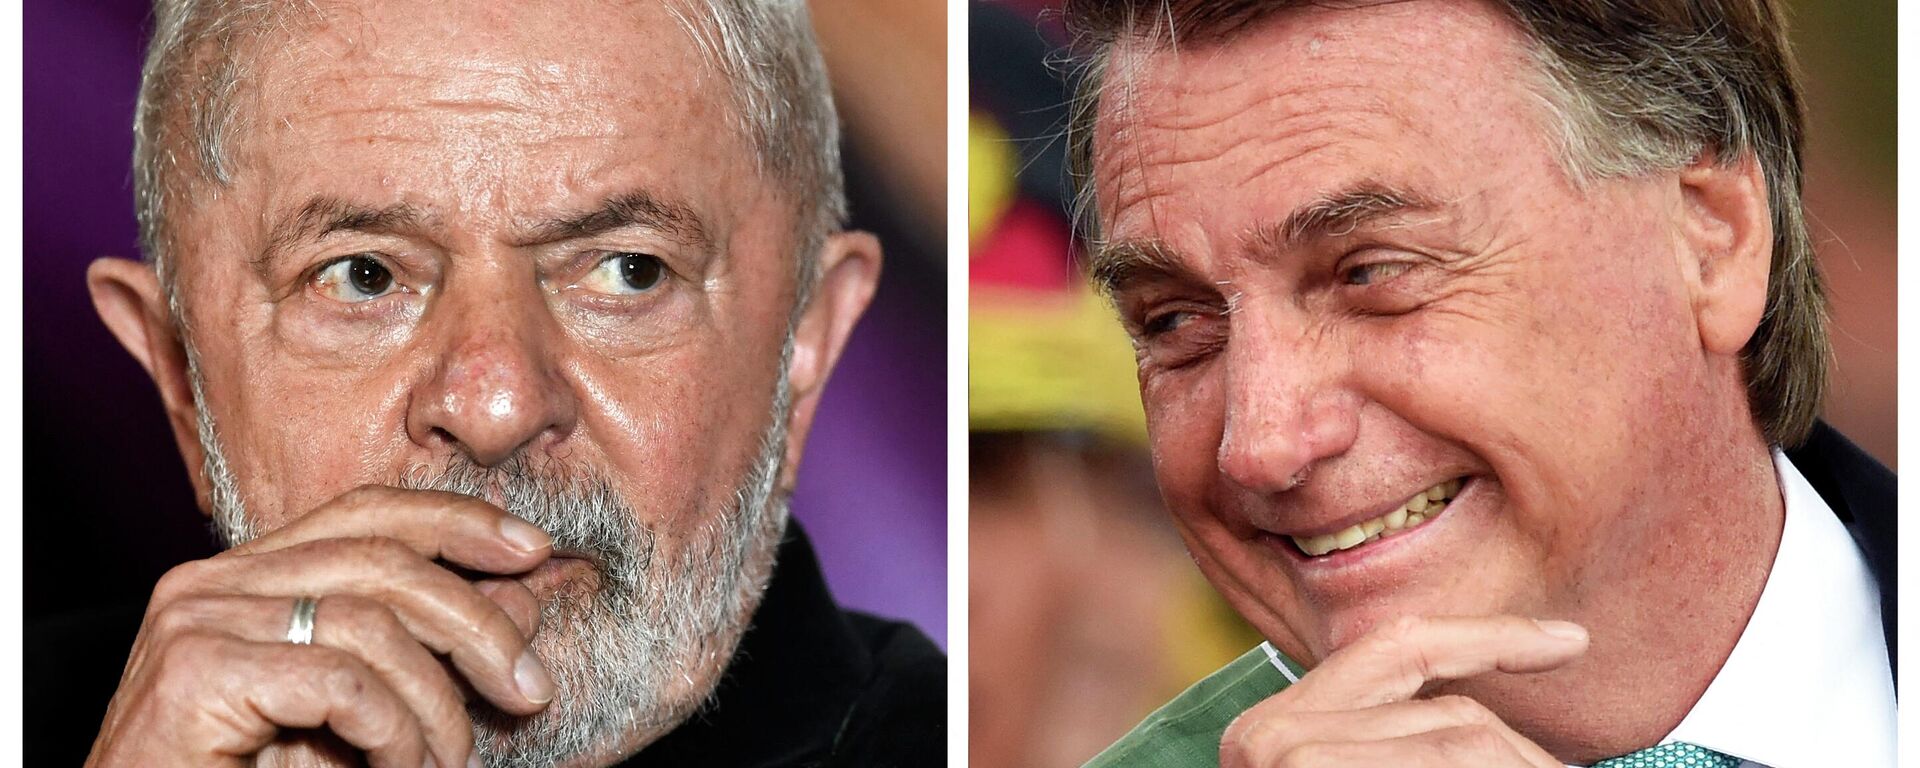 El ex presidente brasileño, Luiz Inácio Lula da Silva (2003-2011) y el presidente actual del país, Jair Bolsonaro - Sputnik Mundo, 1920, 03.10.2022